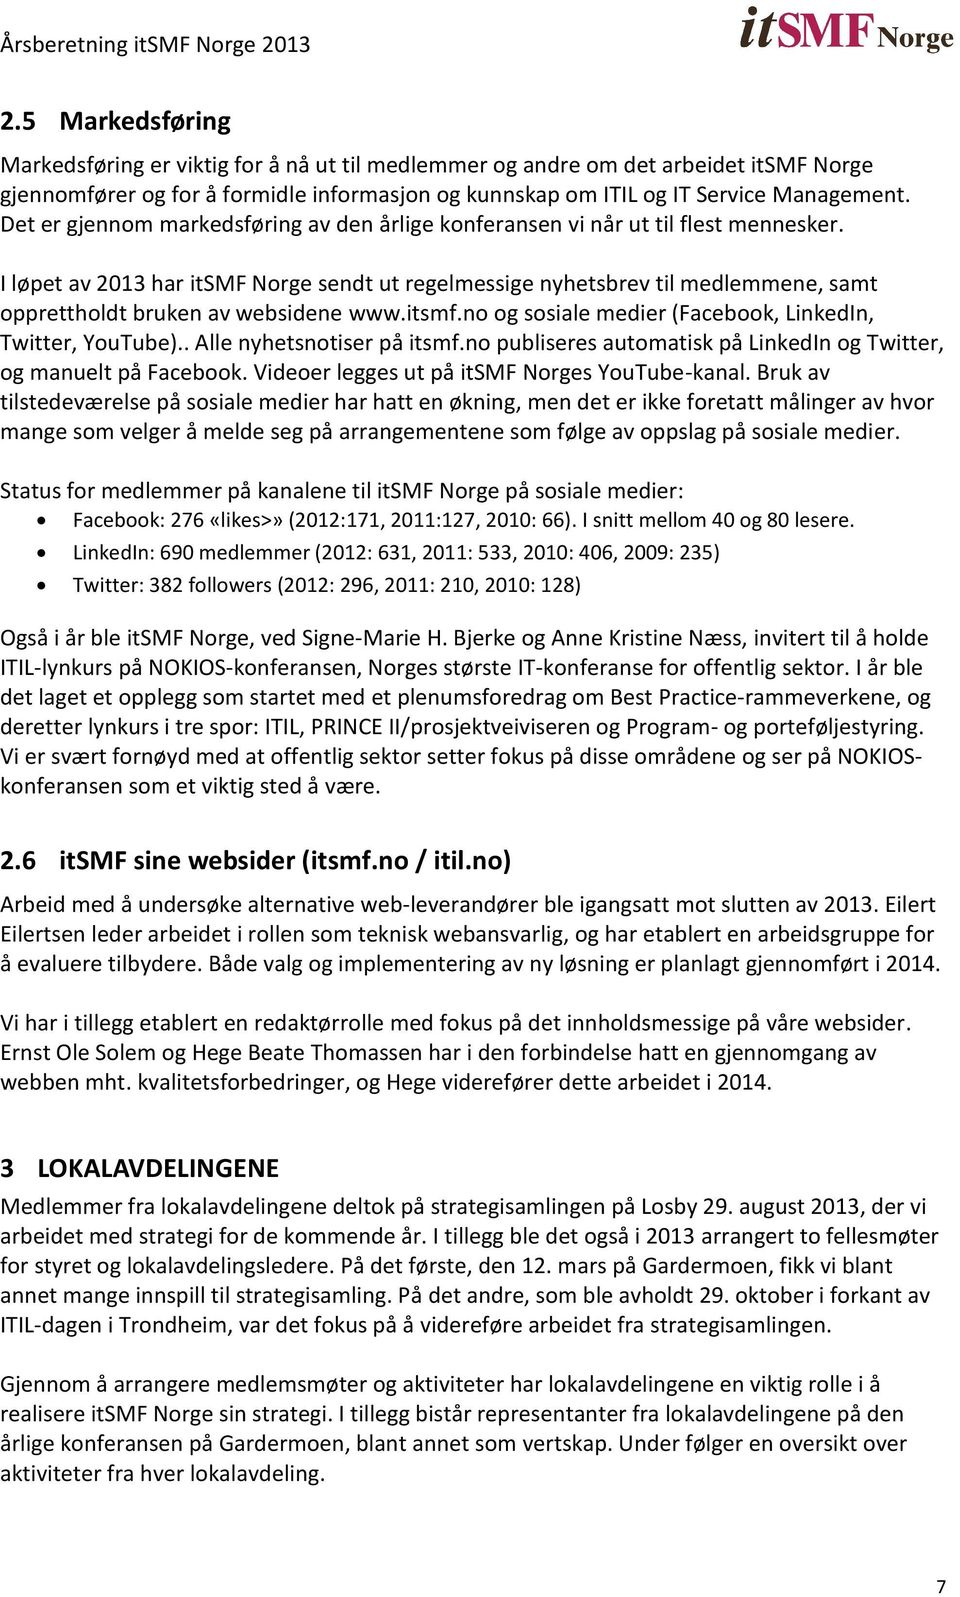 I løpet av 2013 har itsmf Norge sendt ut regelmessige nyhetsbrev til medlemmene, samt opprettholdt bruken av websidene www.itsmf.no og sosiale medier (Facebook, LinkedIn, Twitter, YouTube).